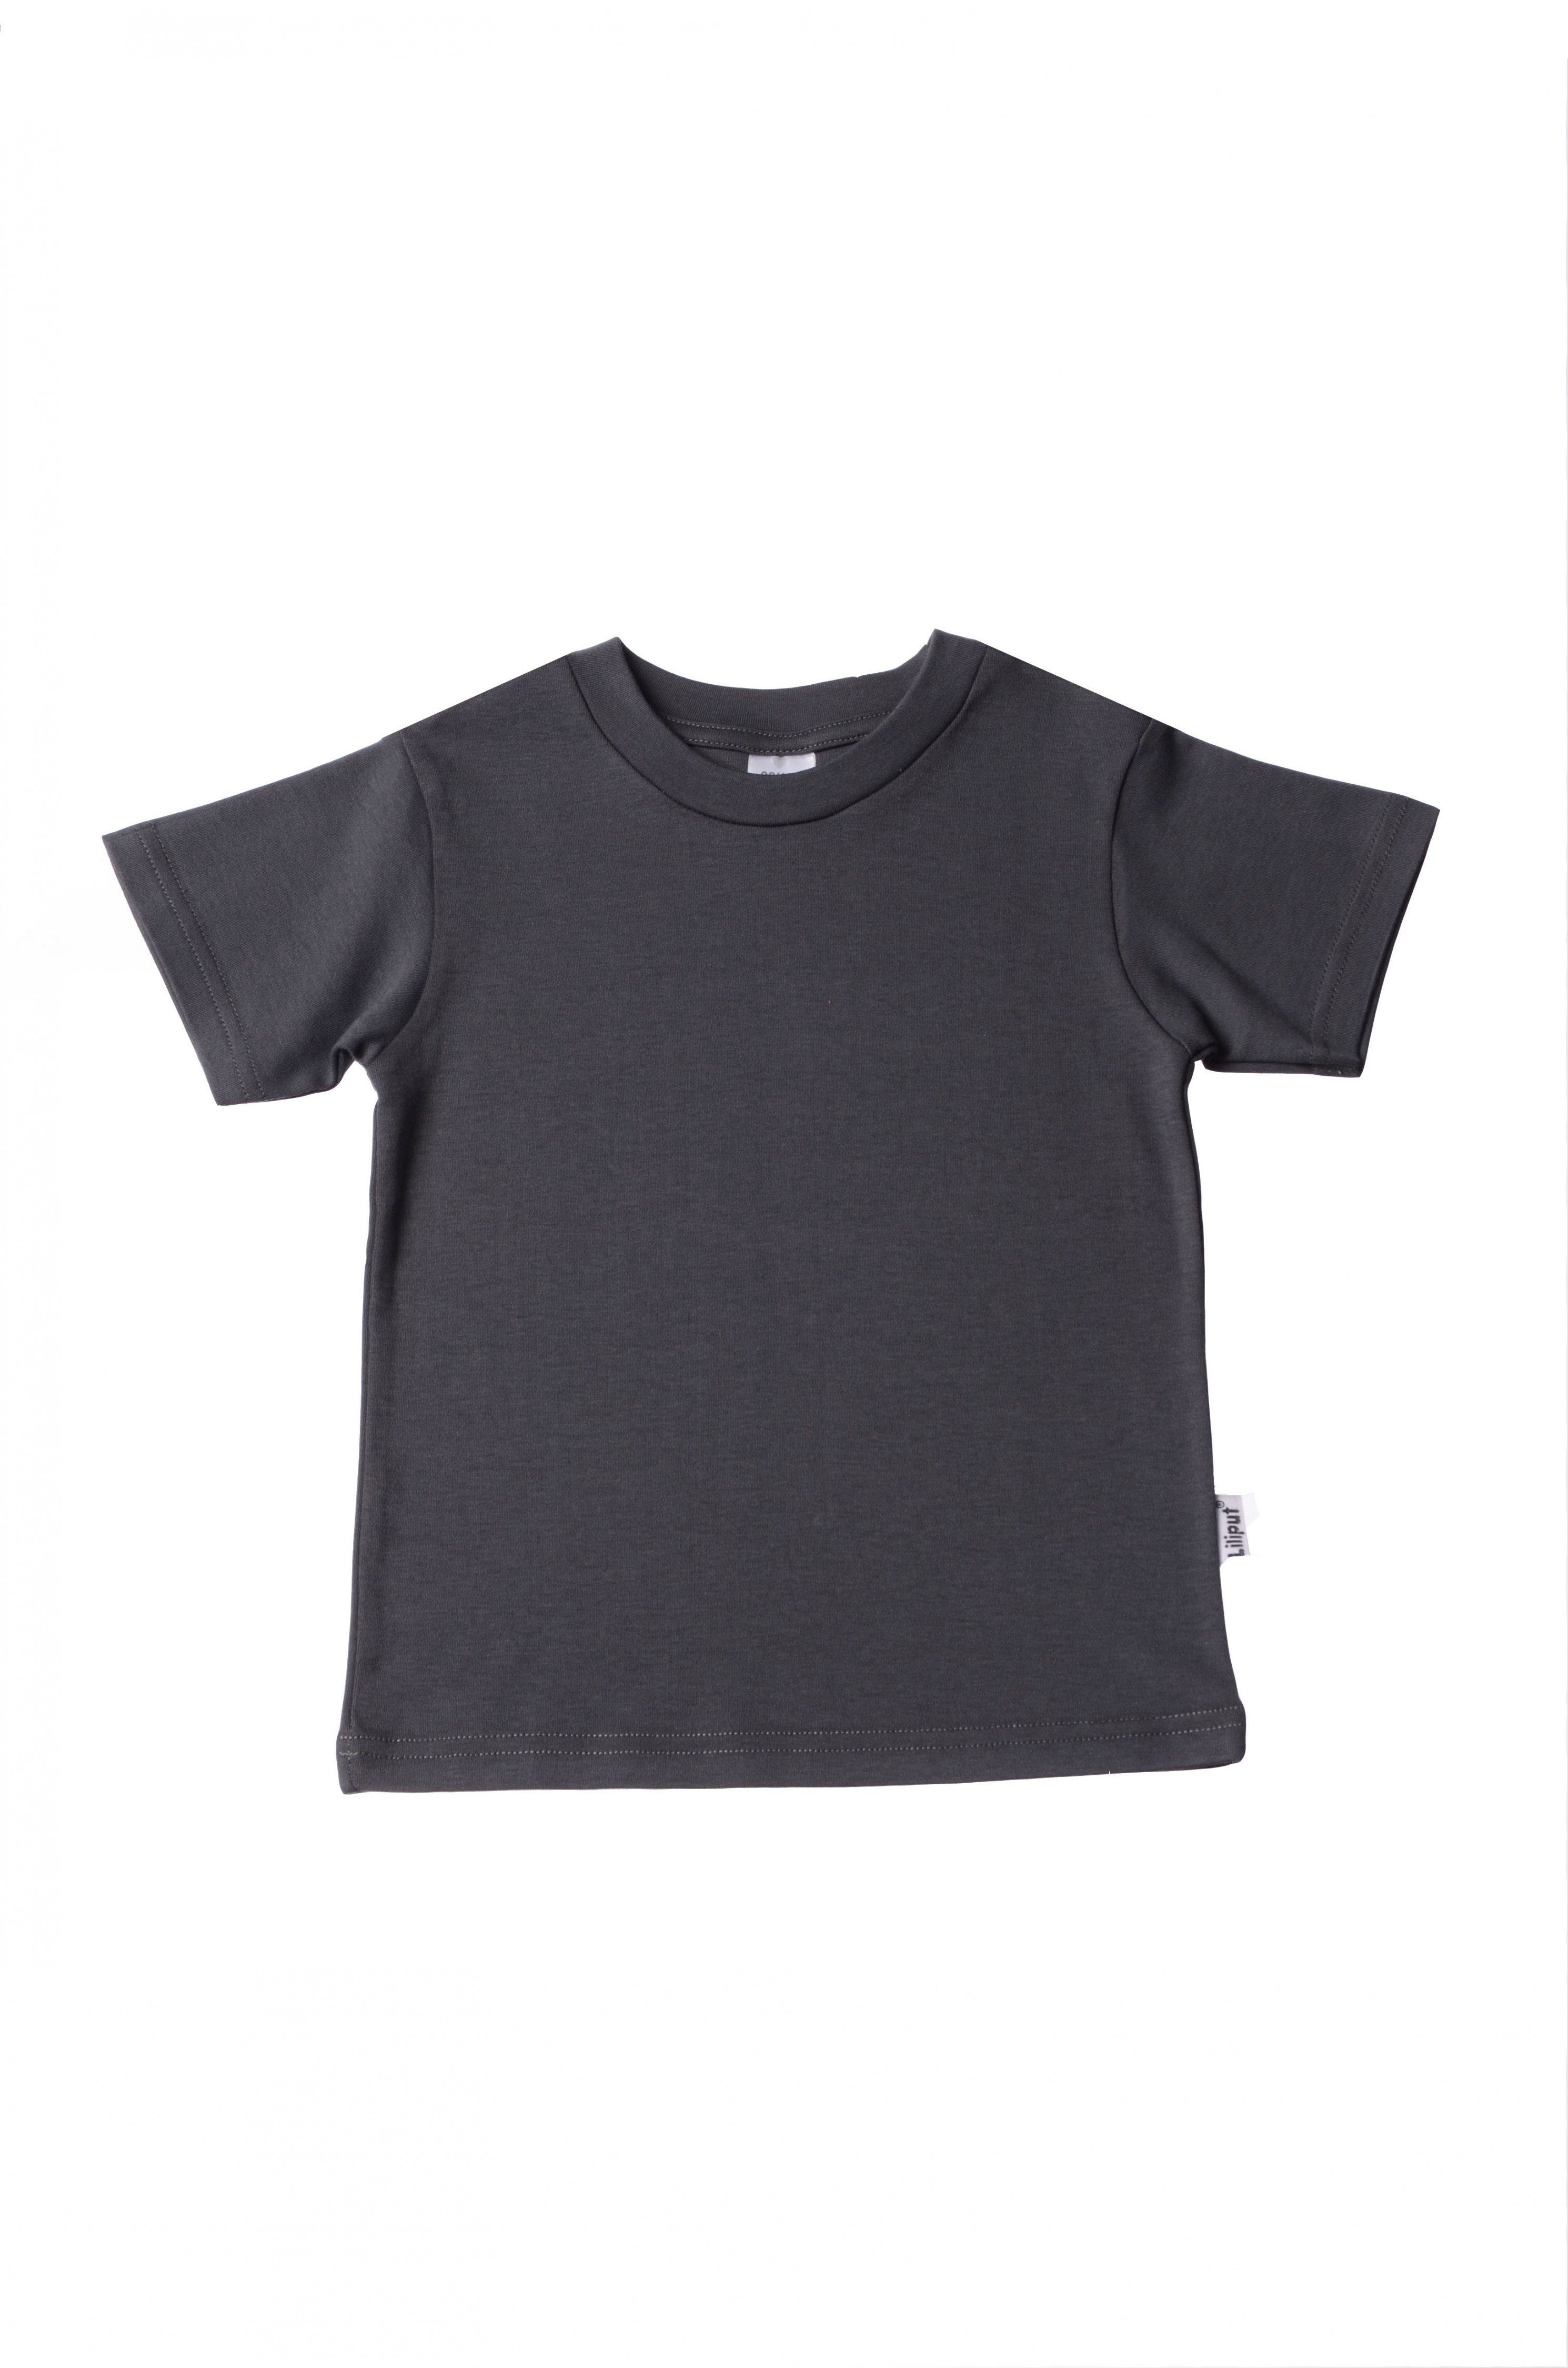 Ausverkauf Liliput T-Shirt in niedlichem Design anthrazit